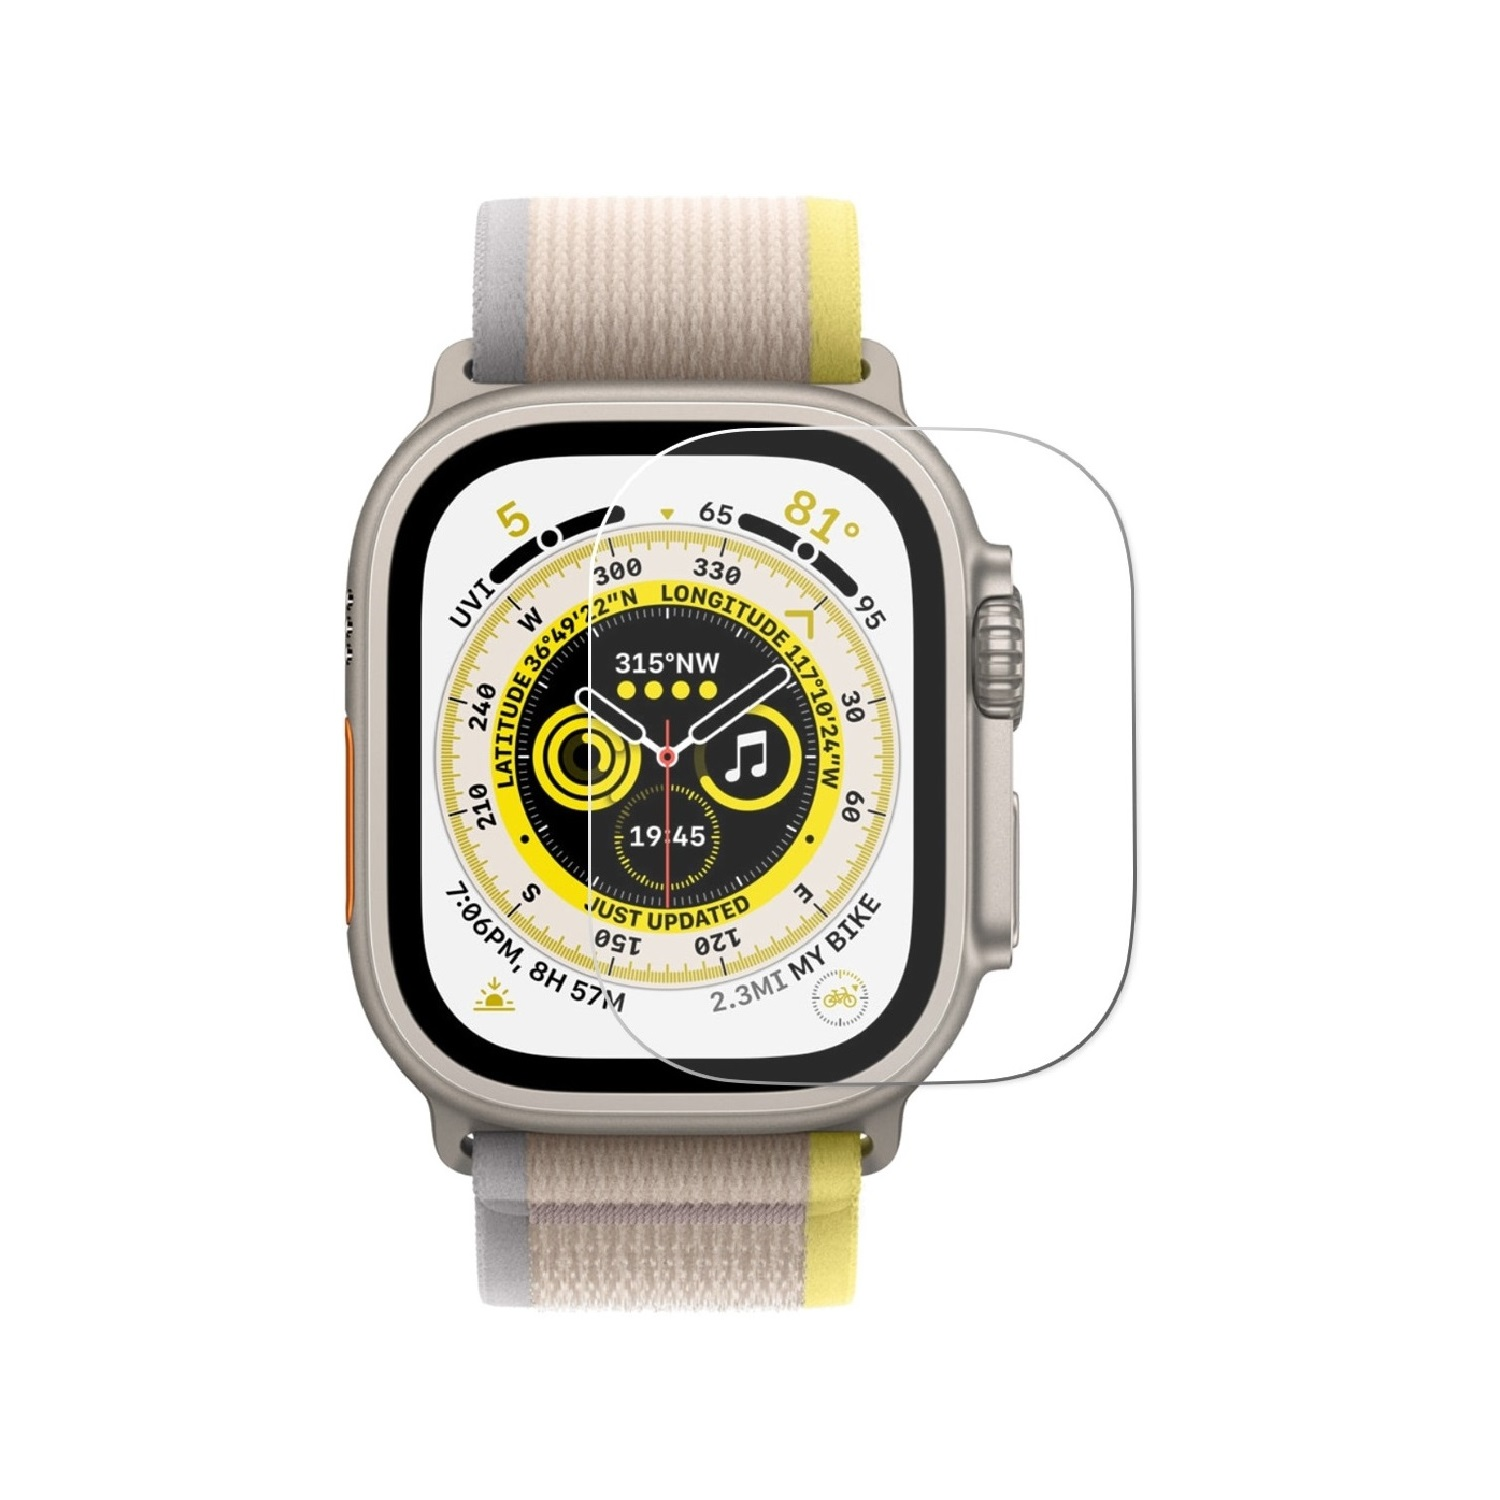 PROTECTORKING Tempered Apple Watch 9H 4x Echtes Ultra Displayschutzfolie(für HD 49mm) Schutzglas KLAR Hartglas